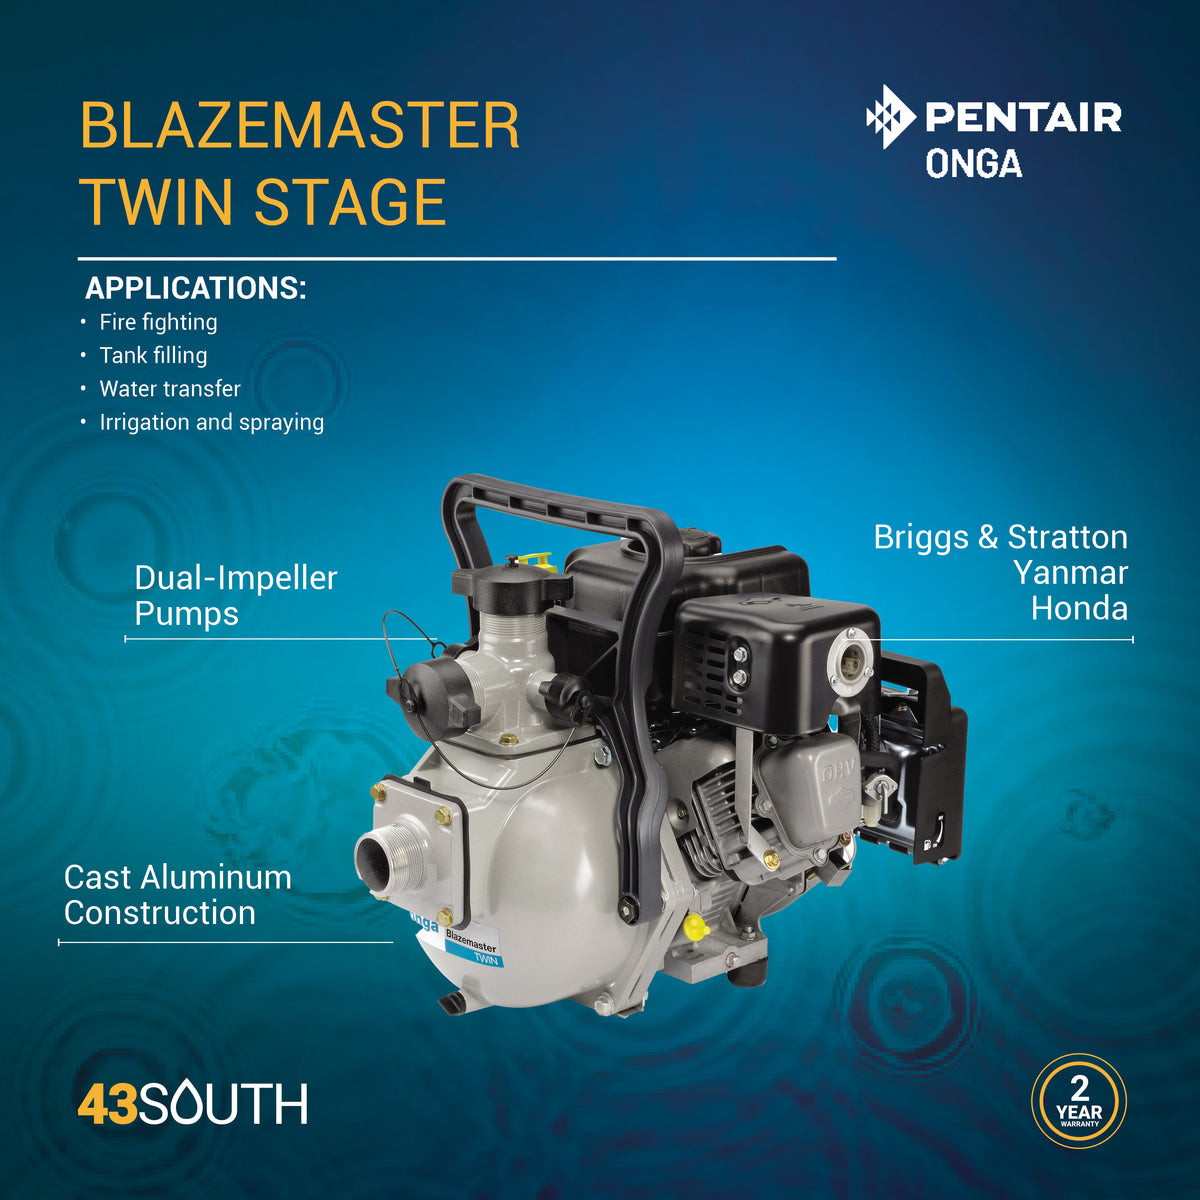 Blazemaster Twin Stage